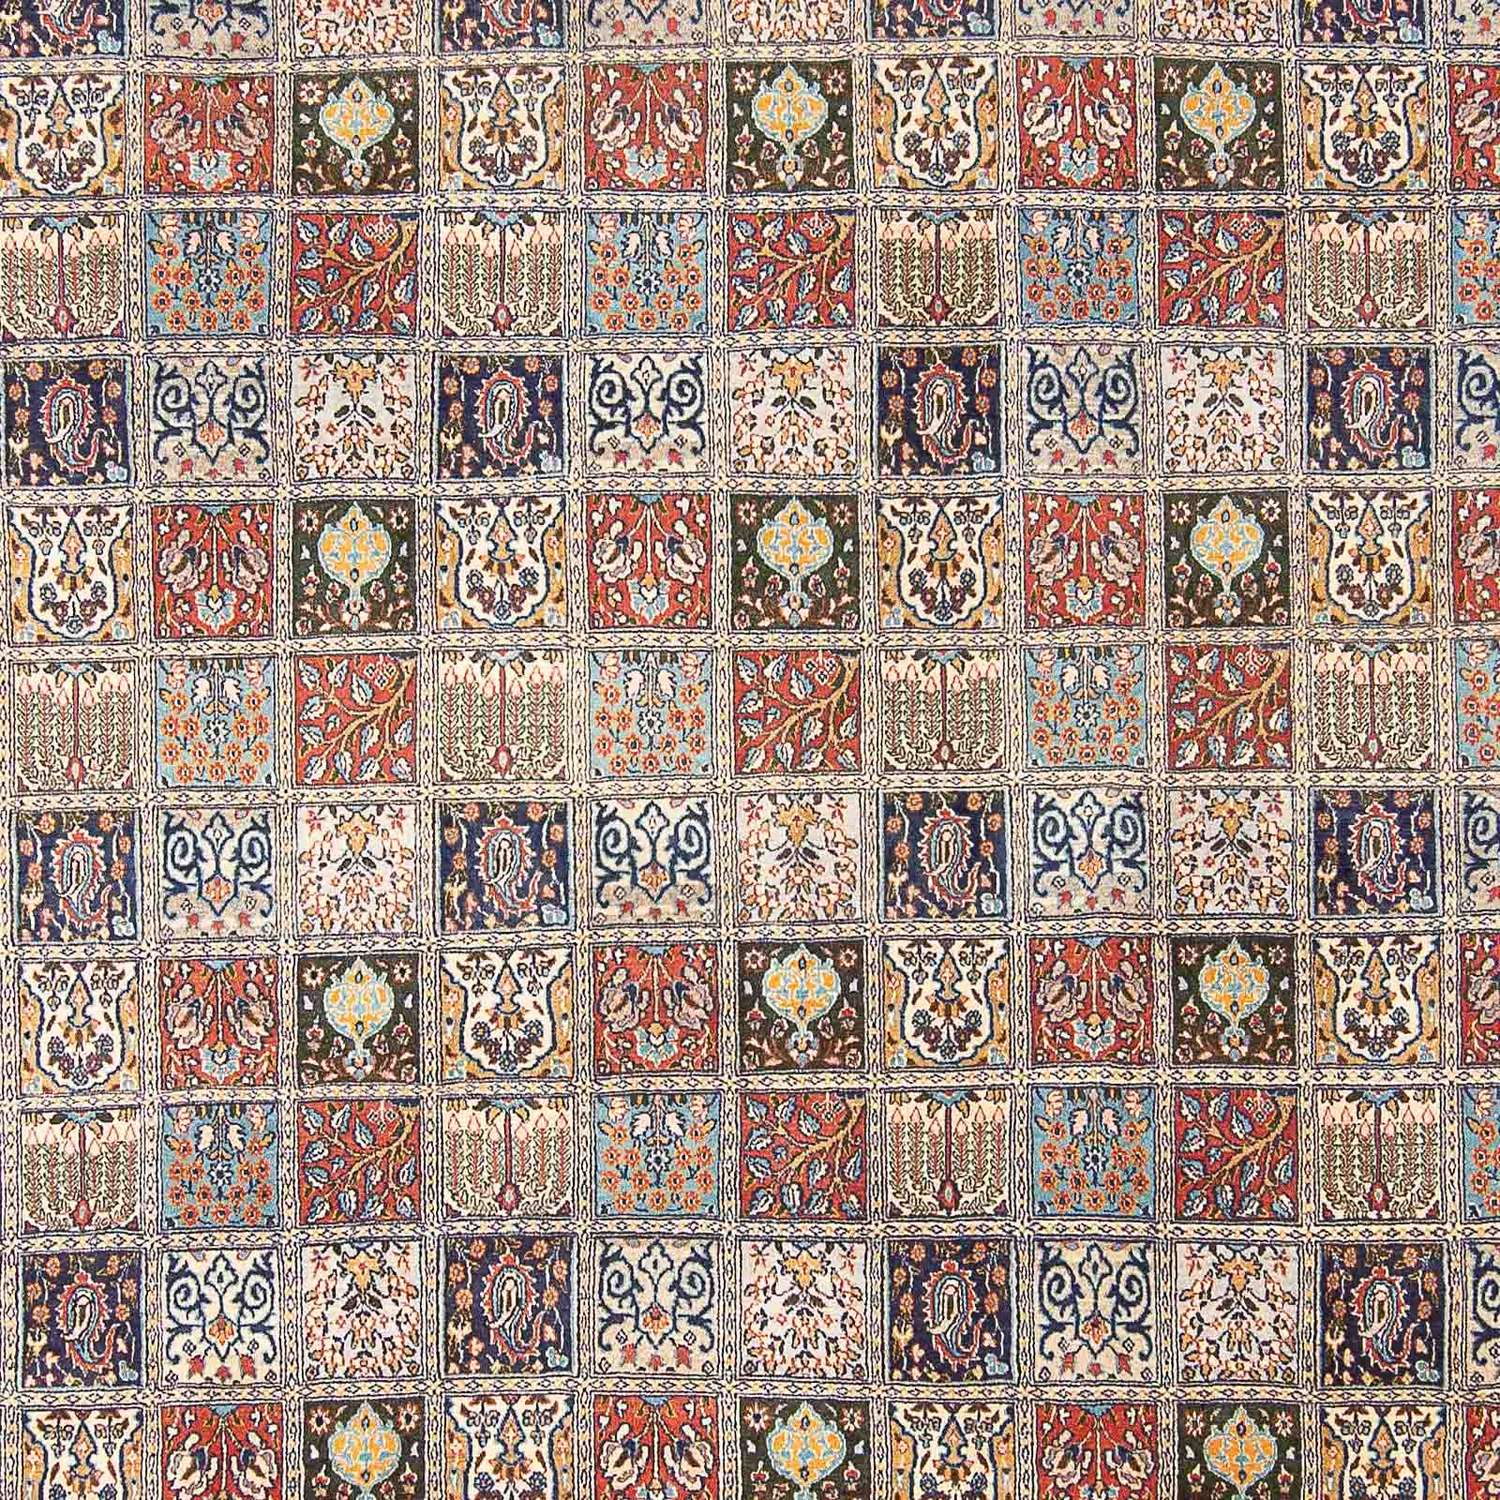 Perzisch tapijt - Klassiek - 400 x 300 cm - veelkleurig